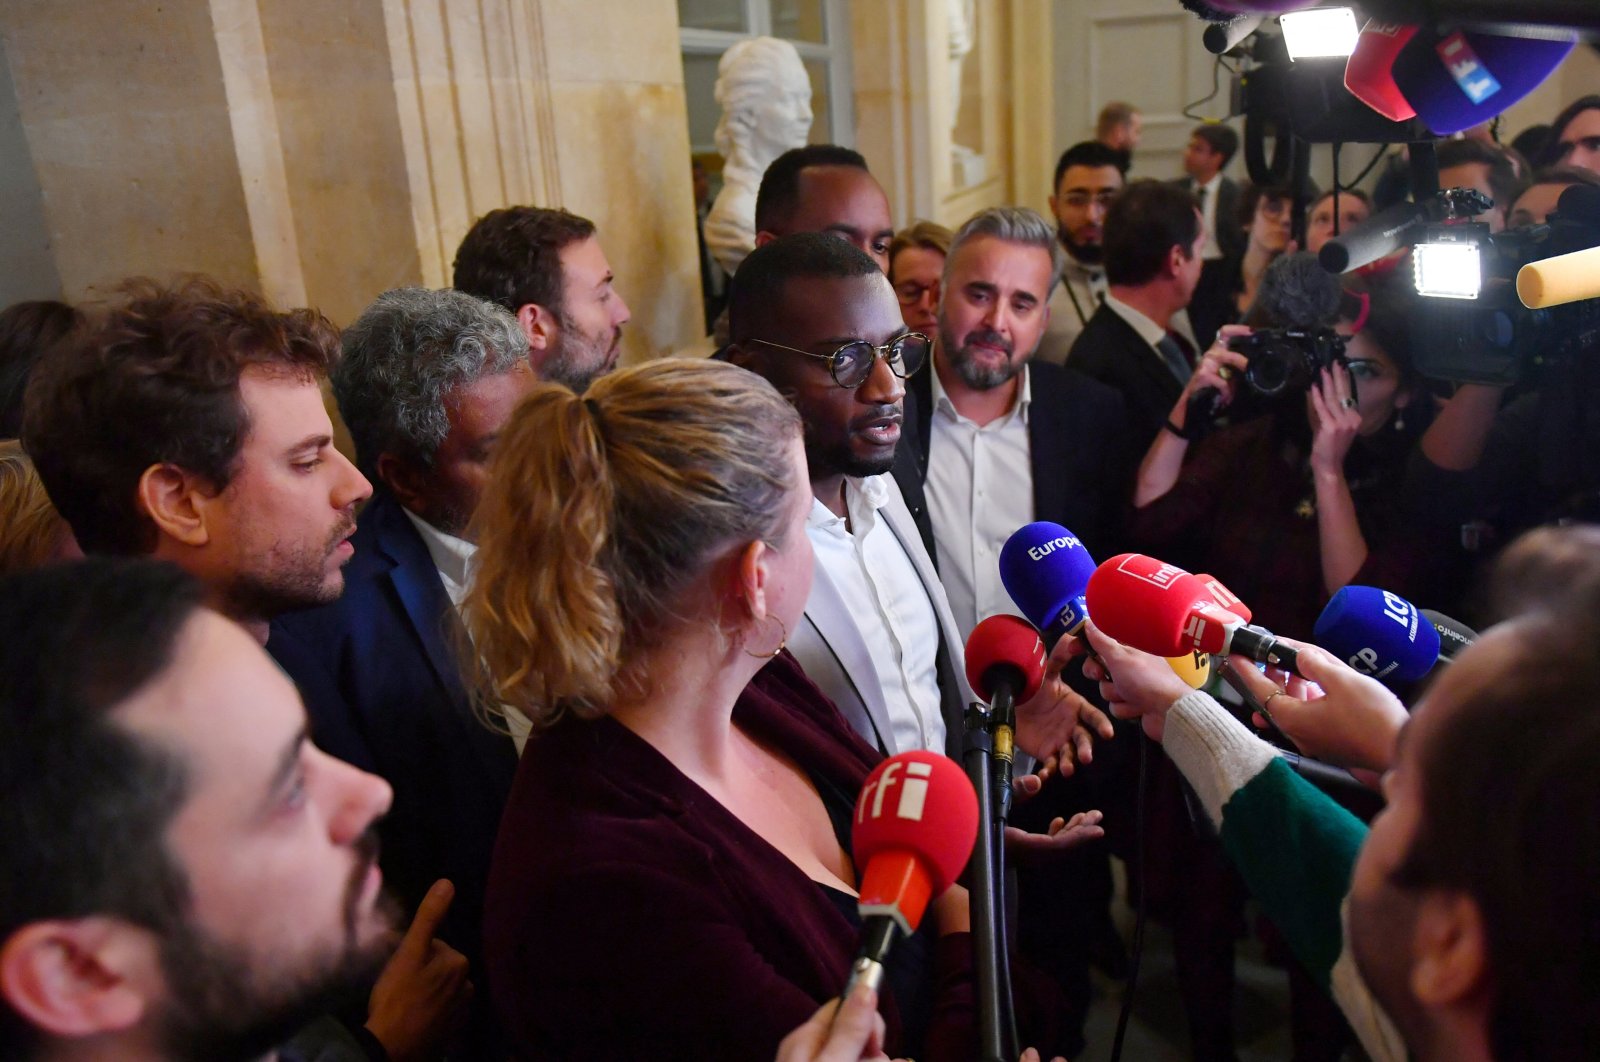 Parlemen Prancis ditangguhkan setelah ledakan rasis ‘kembali ke Afrika’